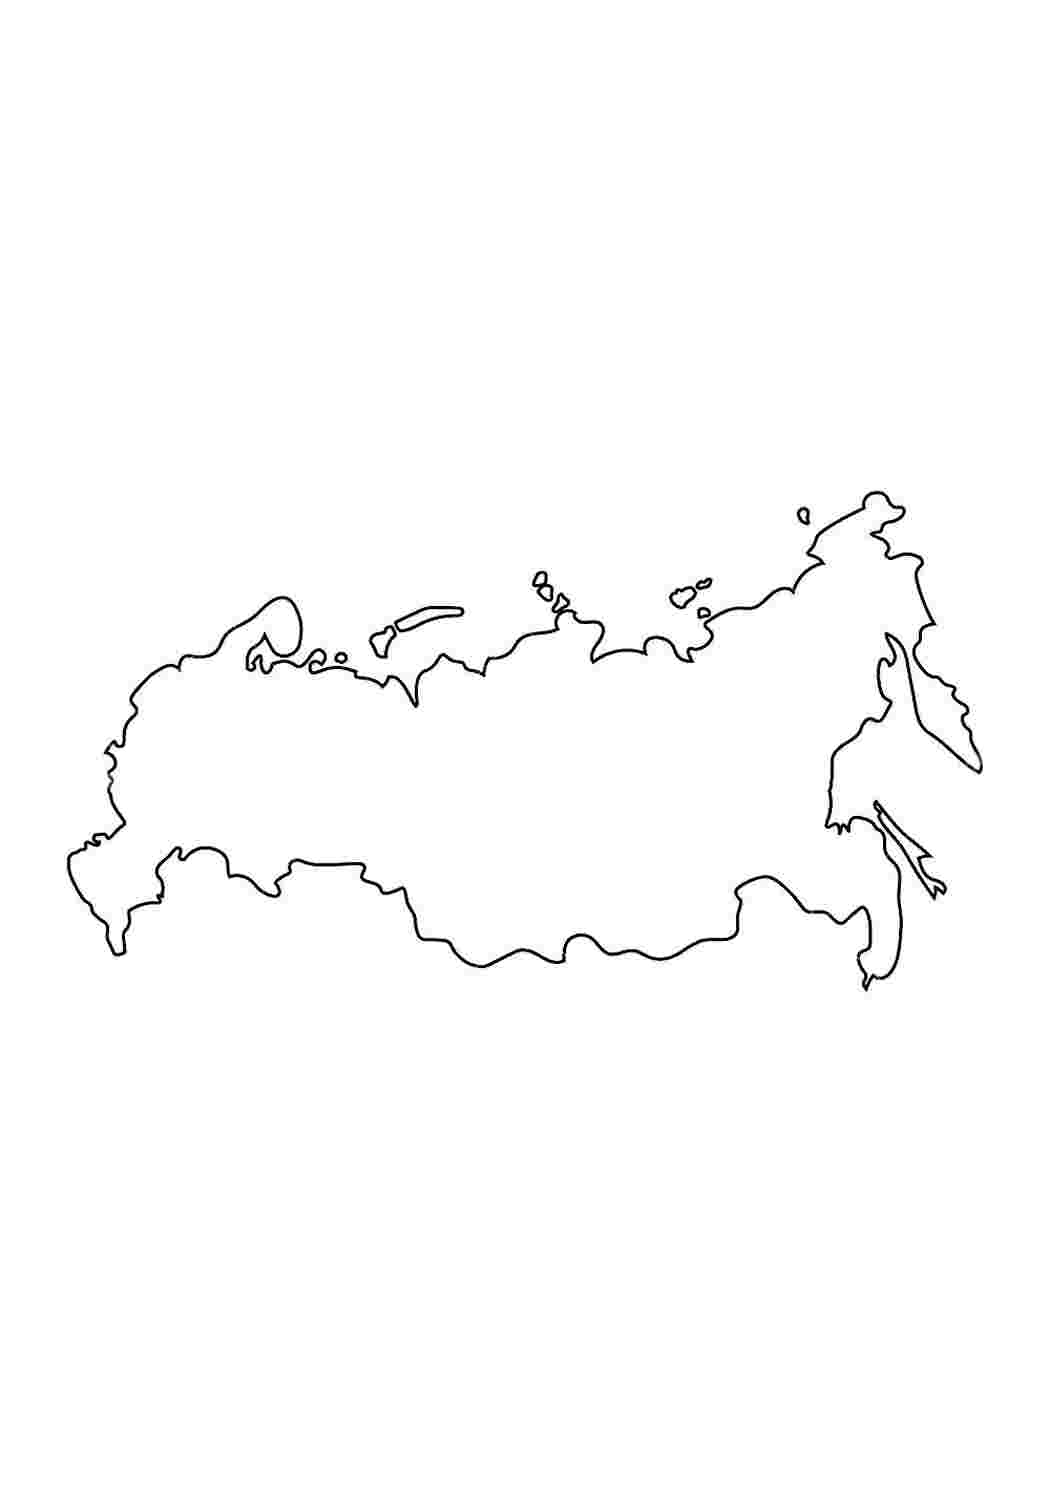 Раскраска для девочки и мальчика, путеводитель по России